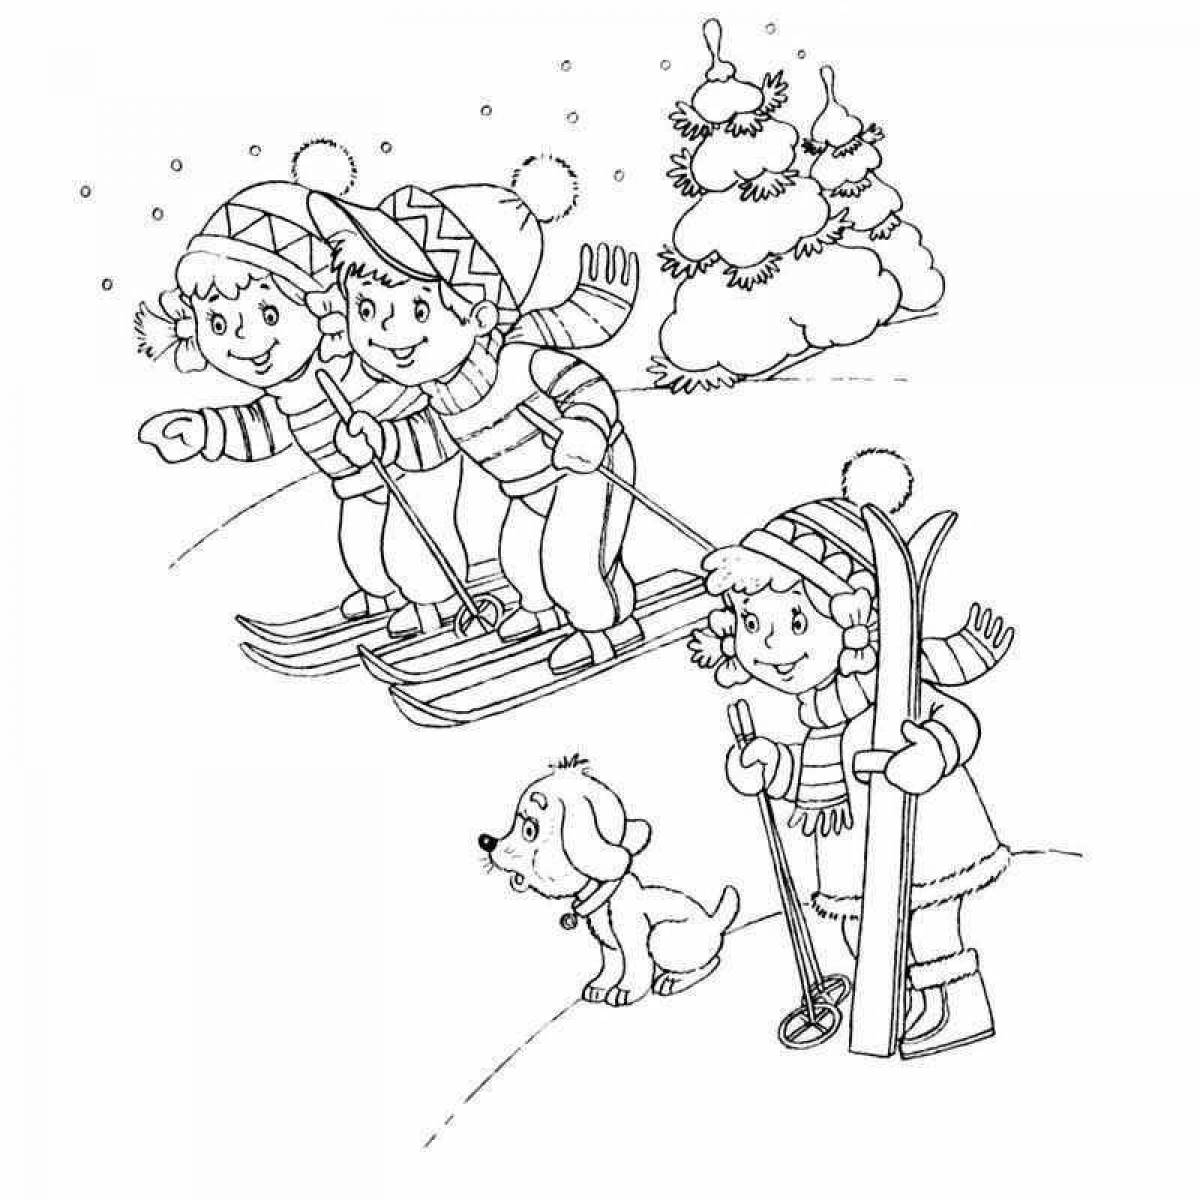 Happy winter fun coloring page